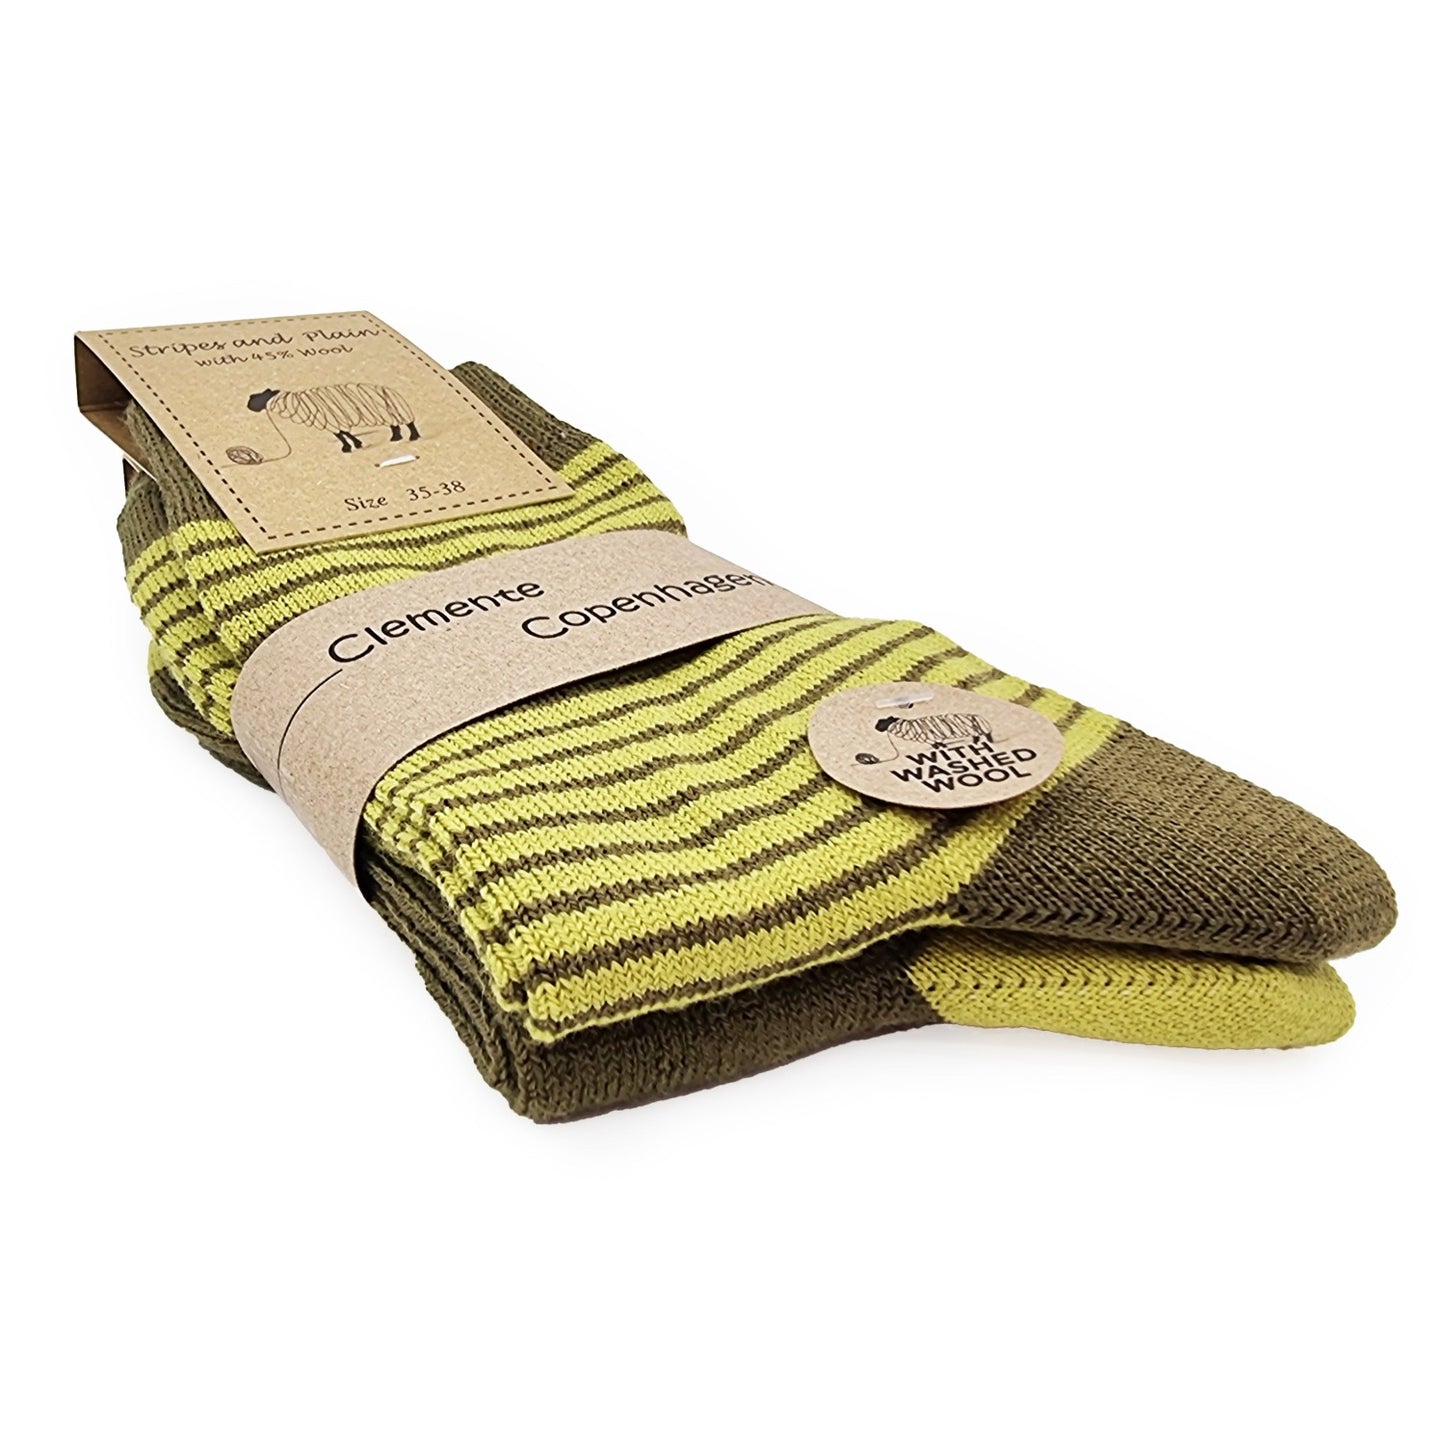 Socks in 45% wool, set of 2 pairs (olive)